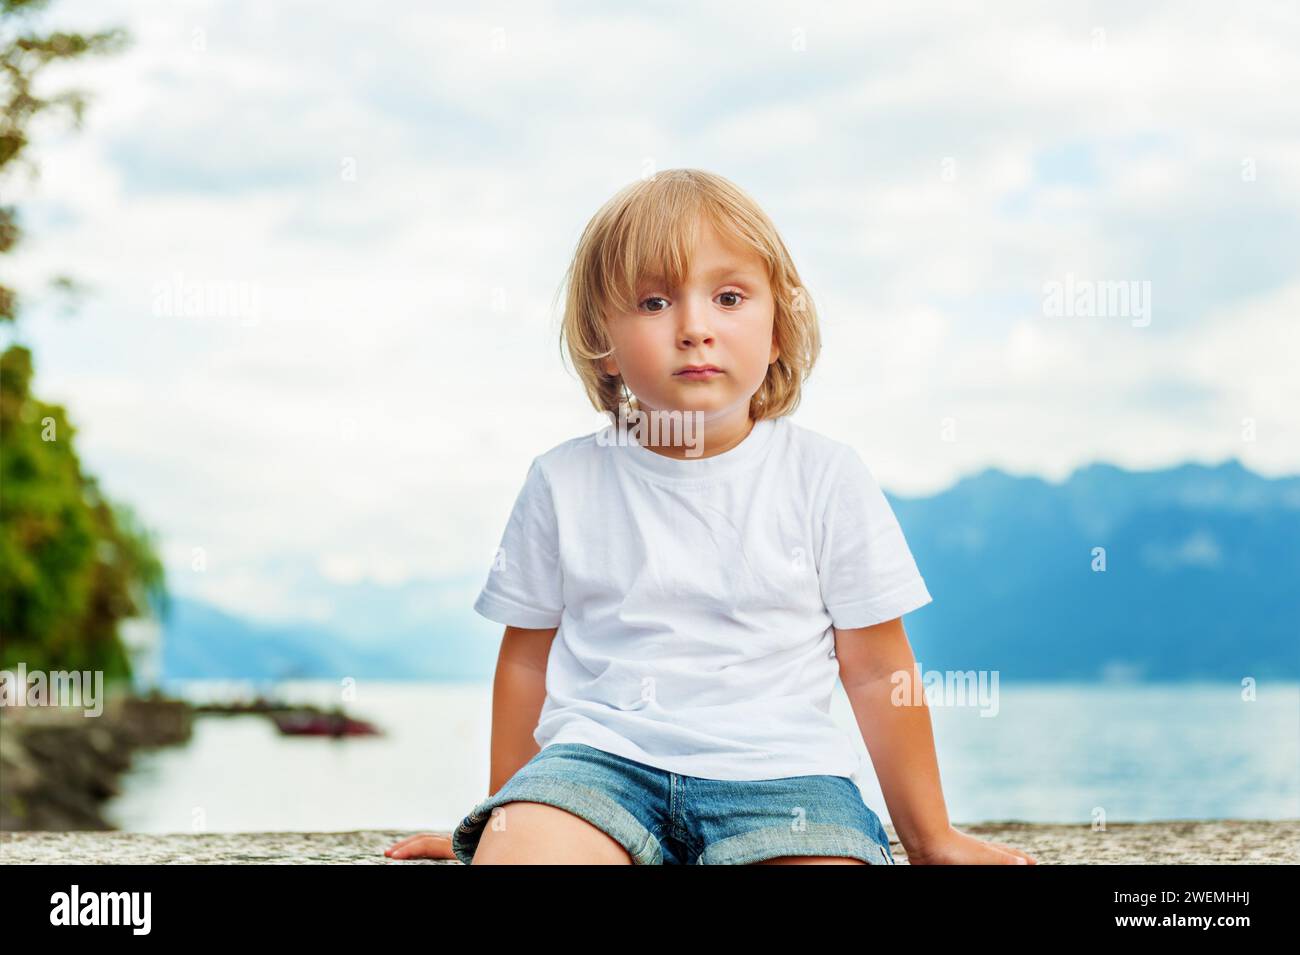 Portrait de beau souriant mignon petit garçon. Petit enfant de 3-4 ans jouant dehors au bord du lac Léman, en été ou au printemps. Garçon assis seul b Banque D'Images